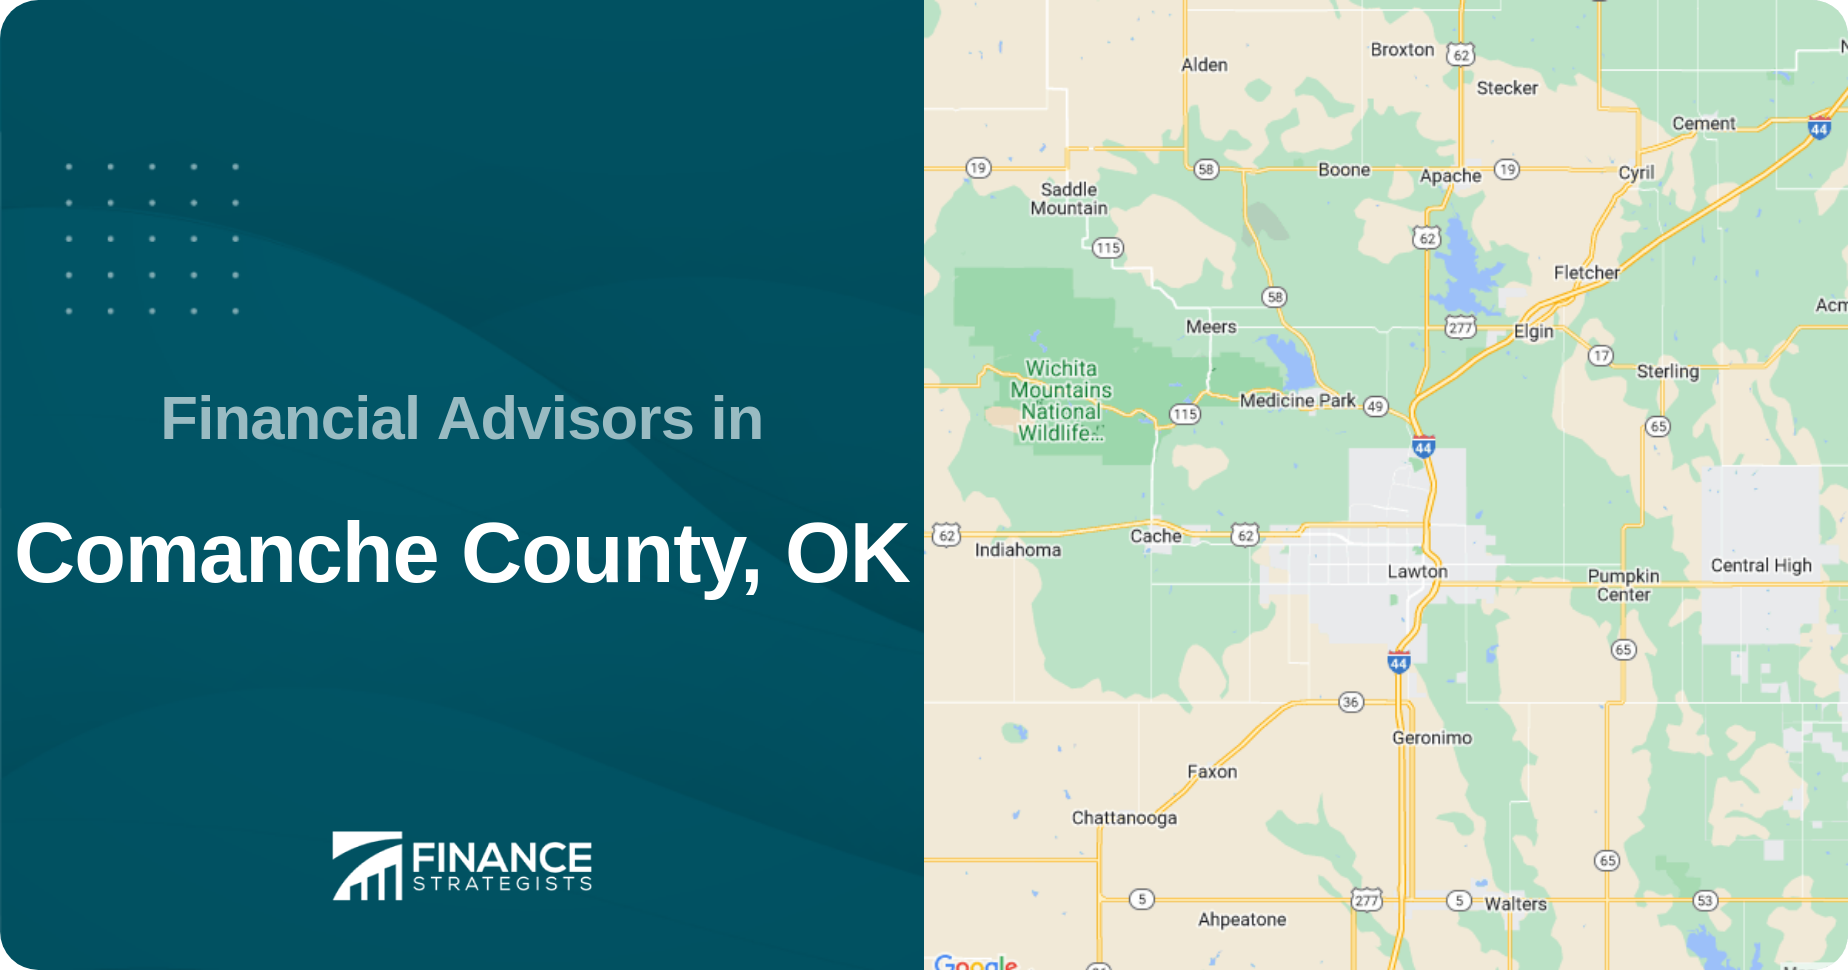 Financial Advisors in Comanche County, OK